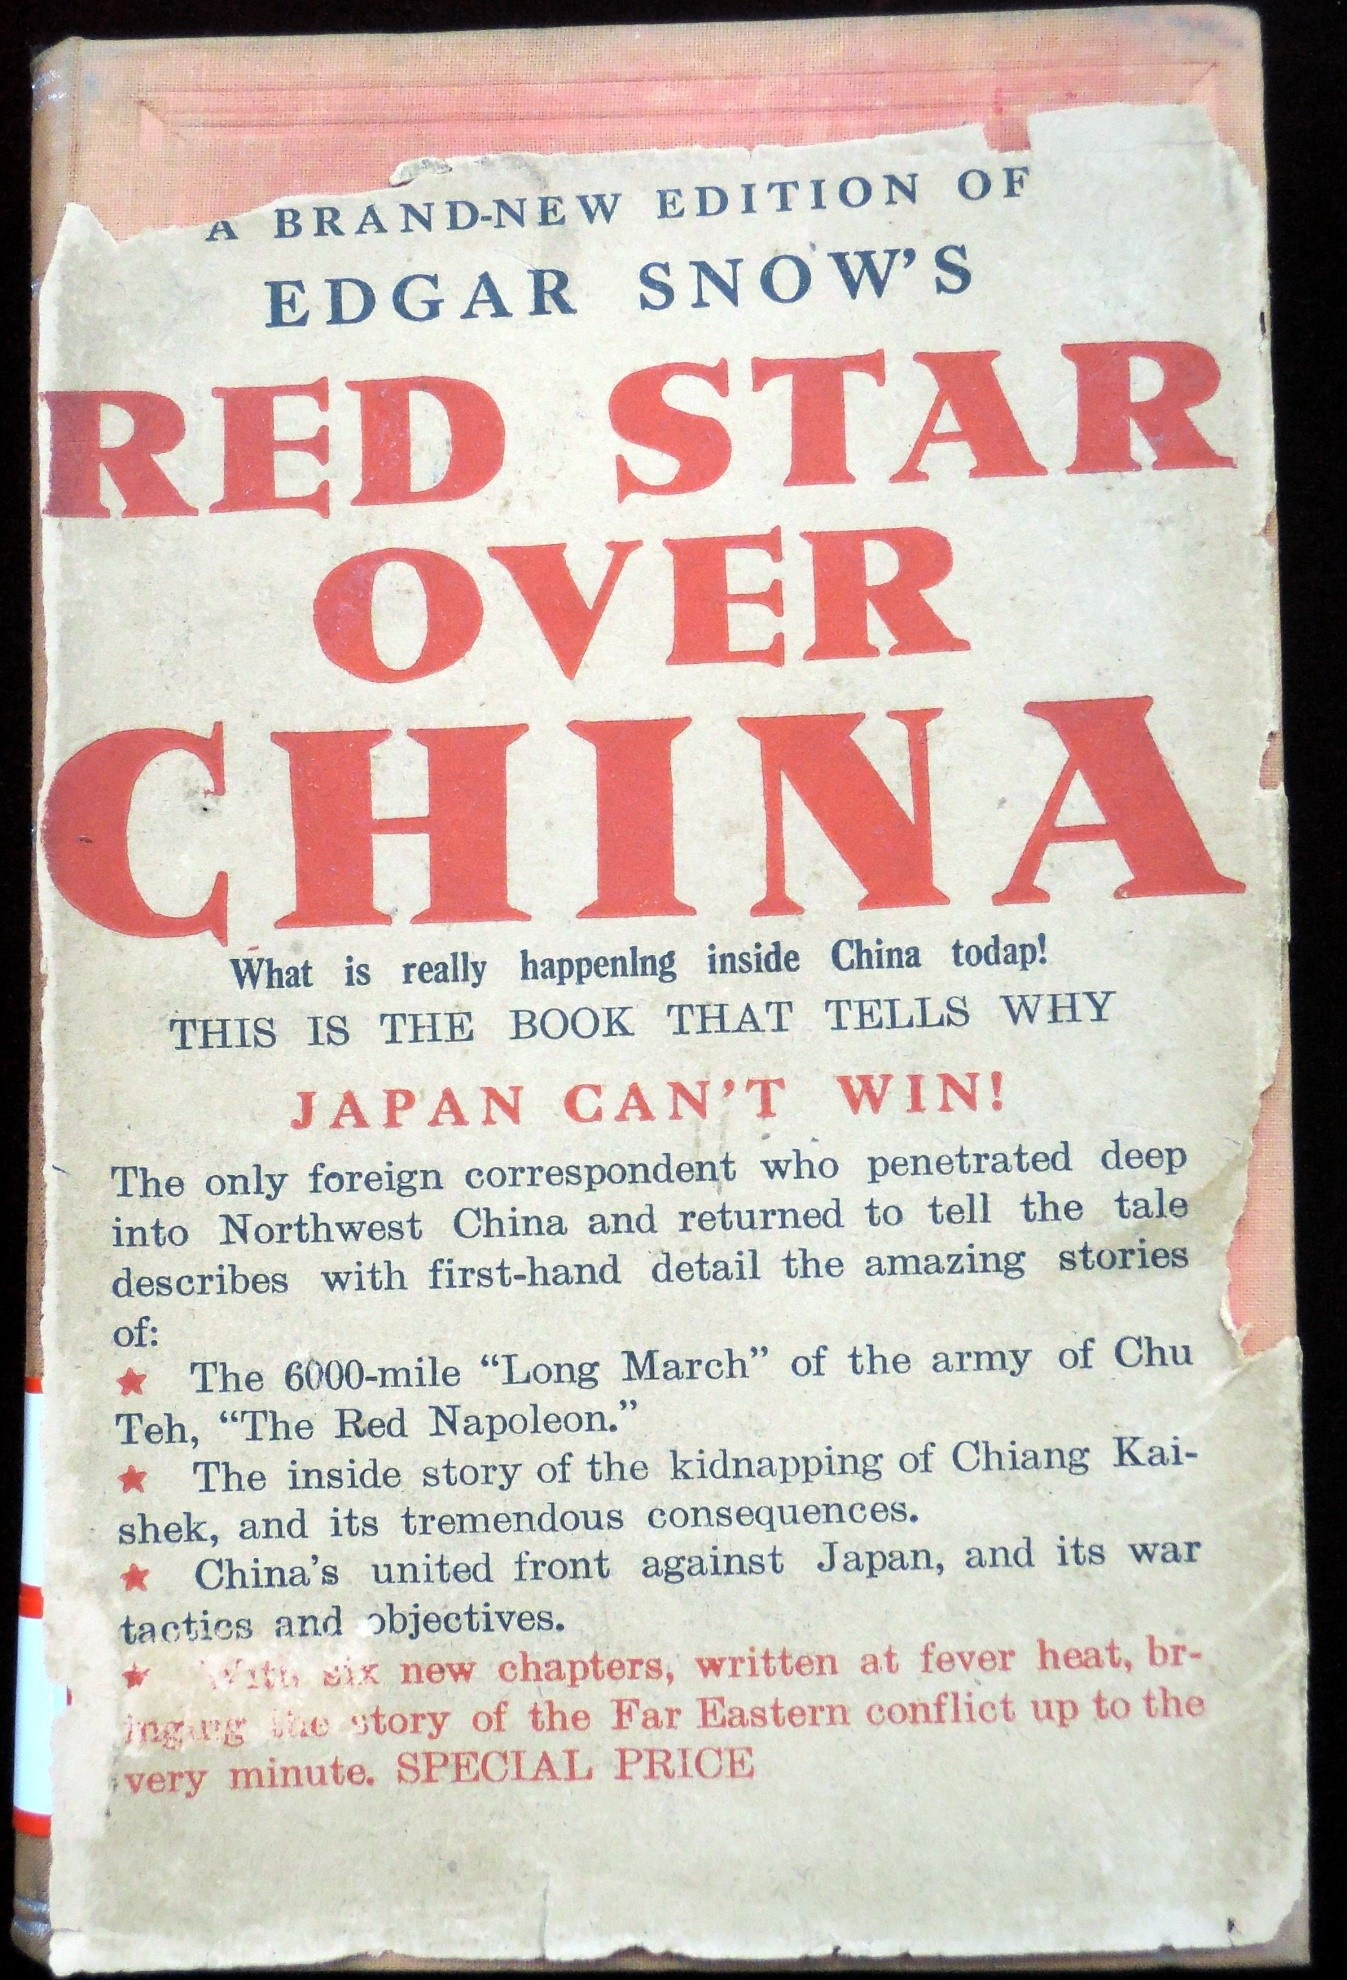 world first western journalist to interview Mao.